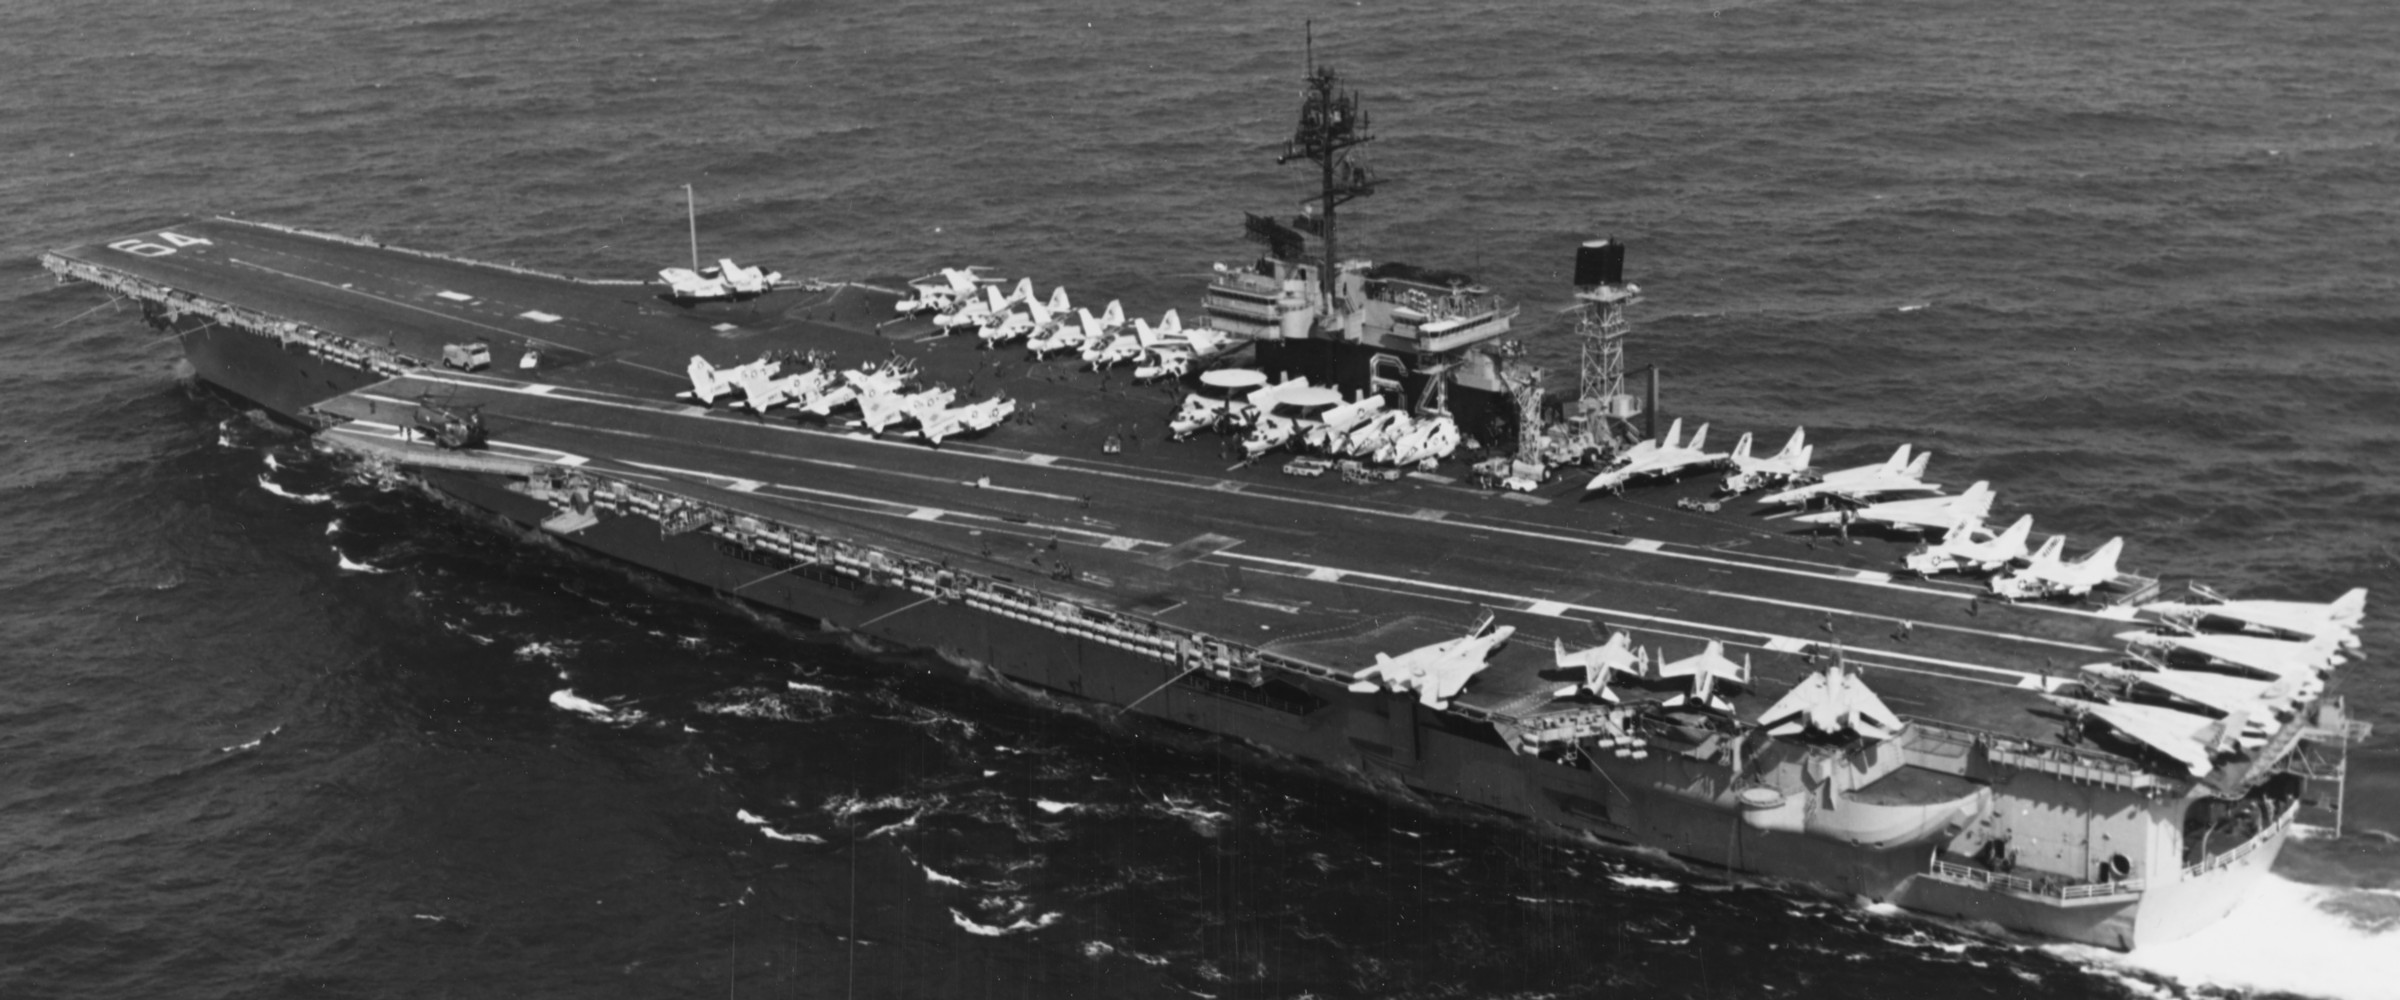 cv-64 uss constellation kitty hawk class aircraft carrier air wing cvw-9 us navy 1981 67